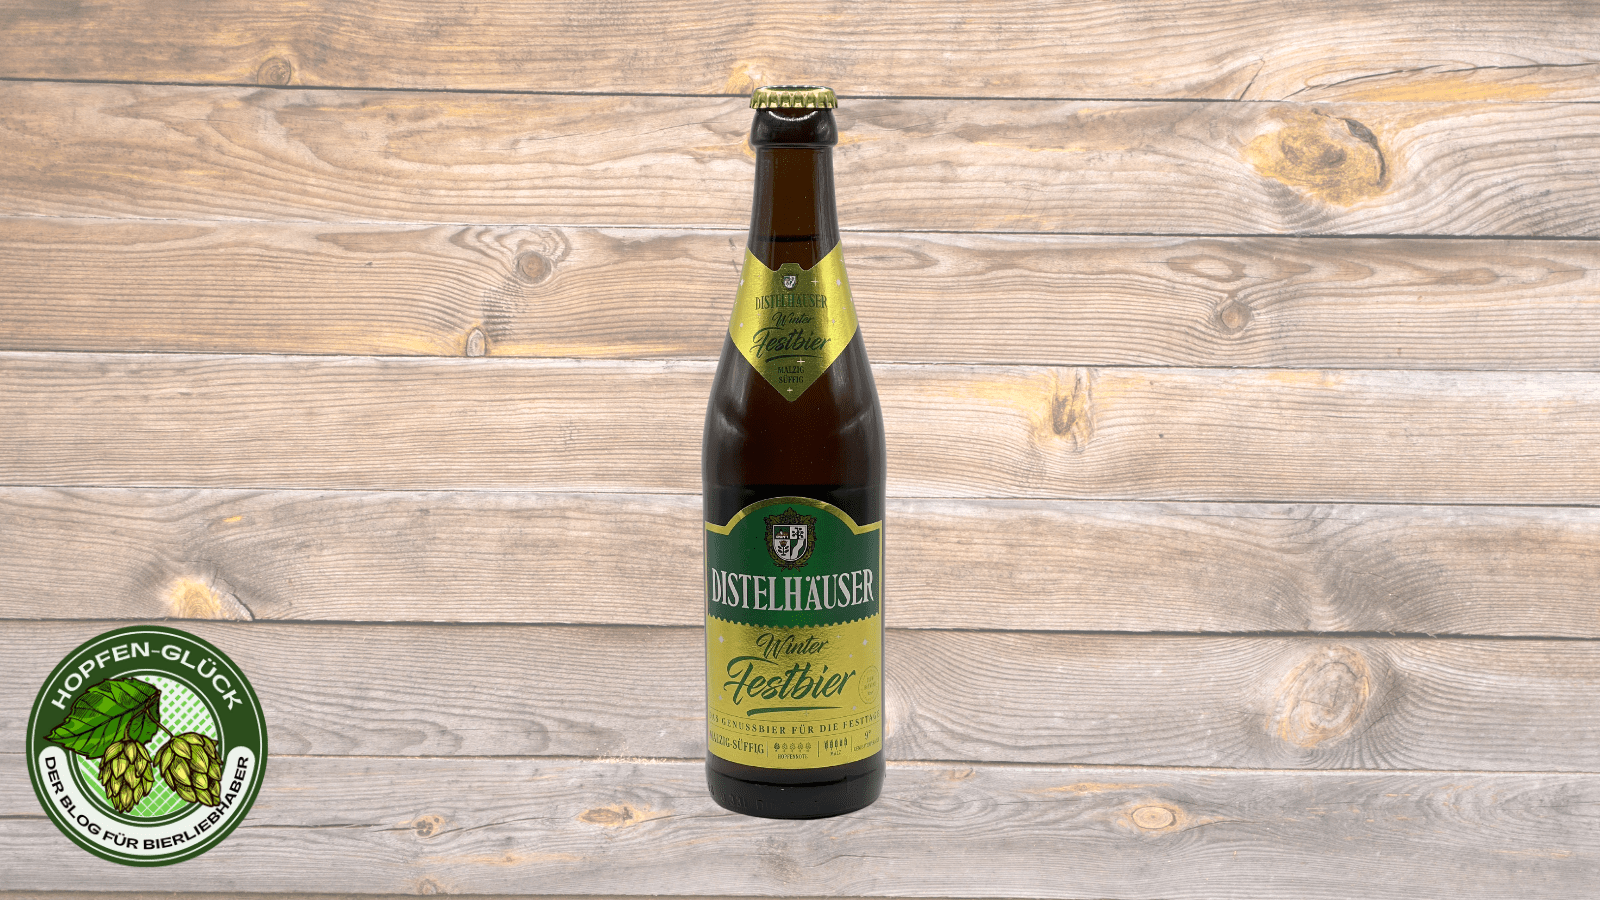 Distelhäuser Brauerei – Winter Festbier